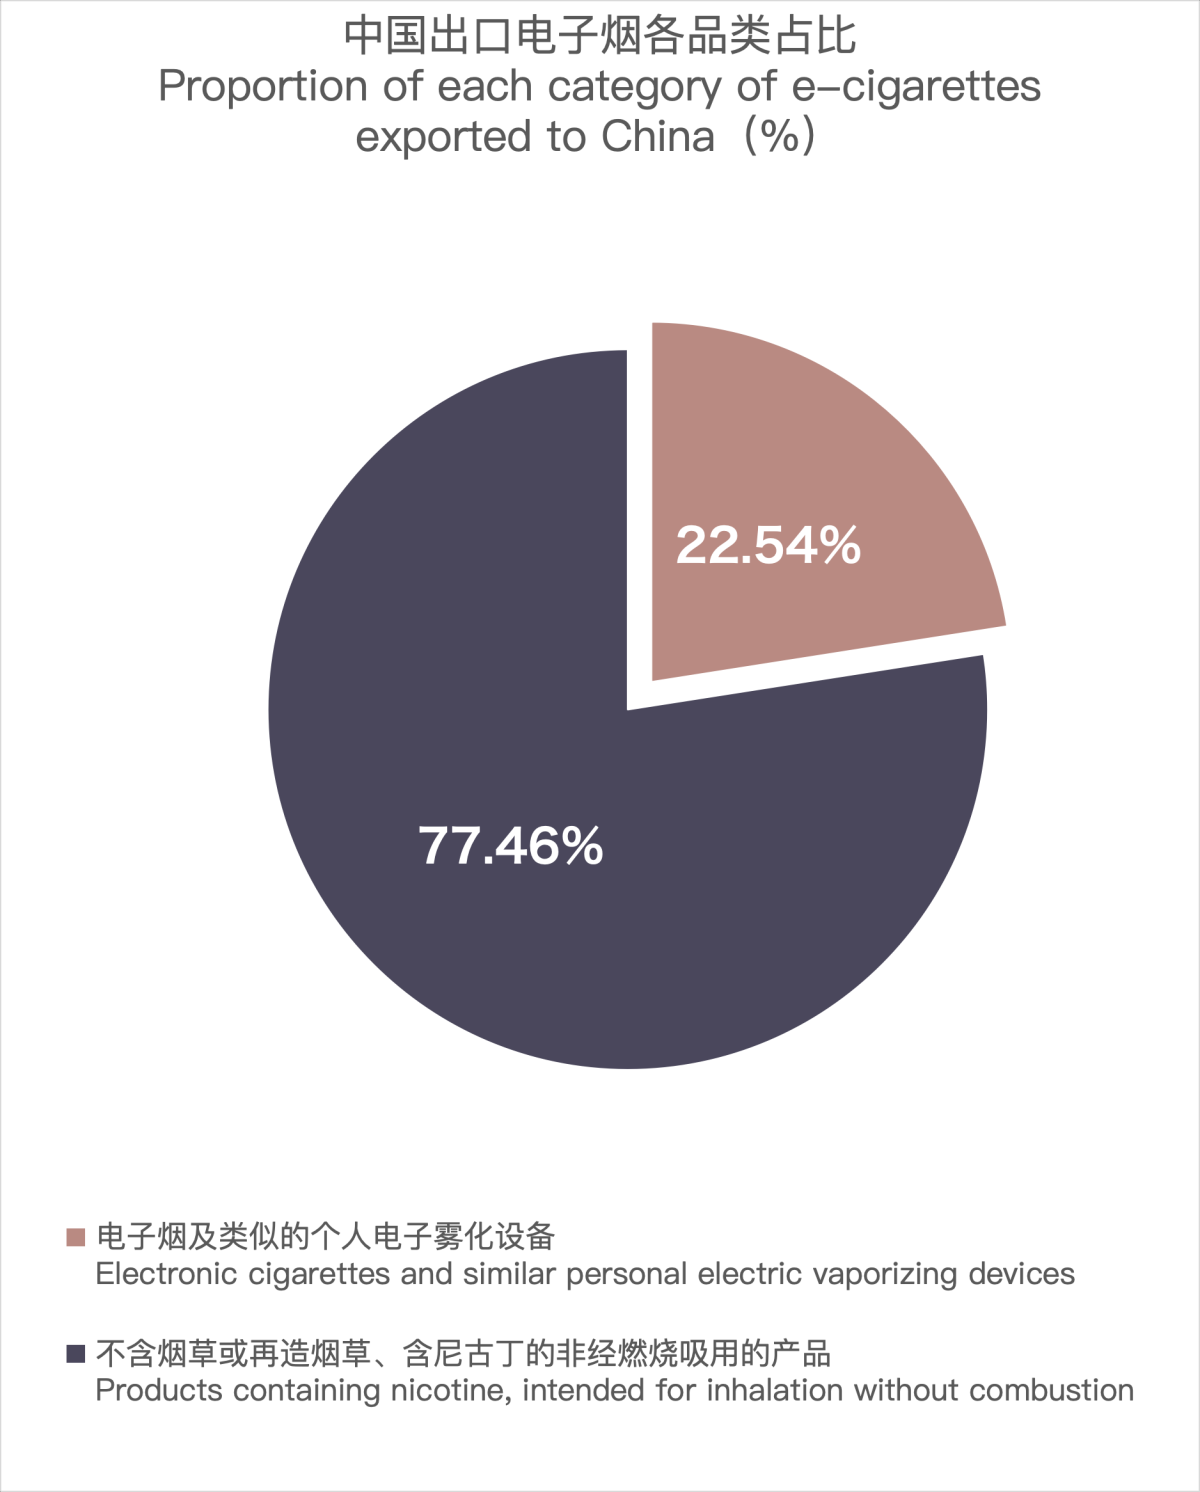 12月中国出口美国电子烟约3.27亿美元 环比增长22.31%